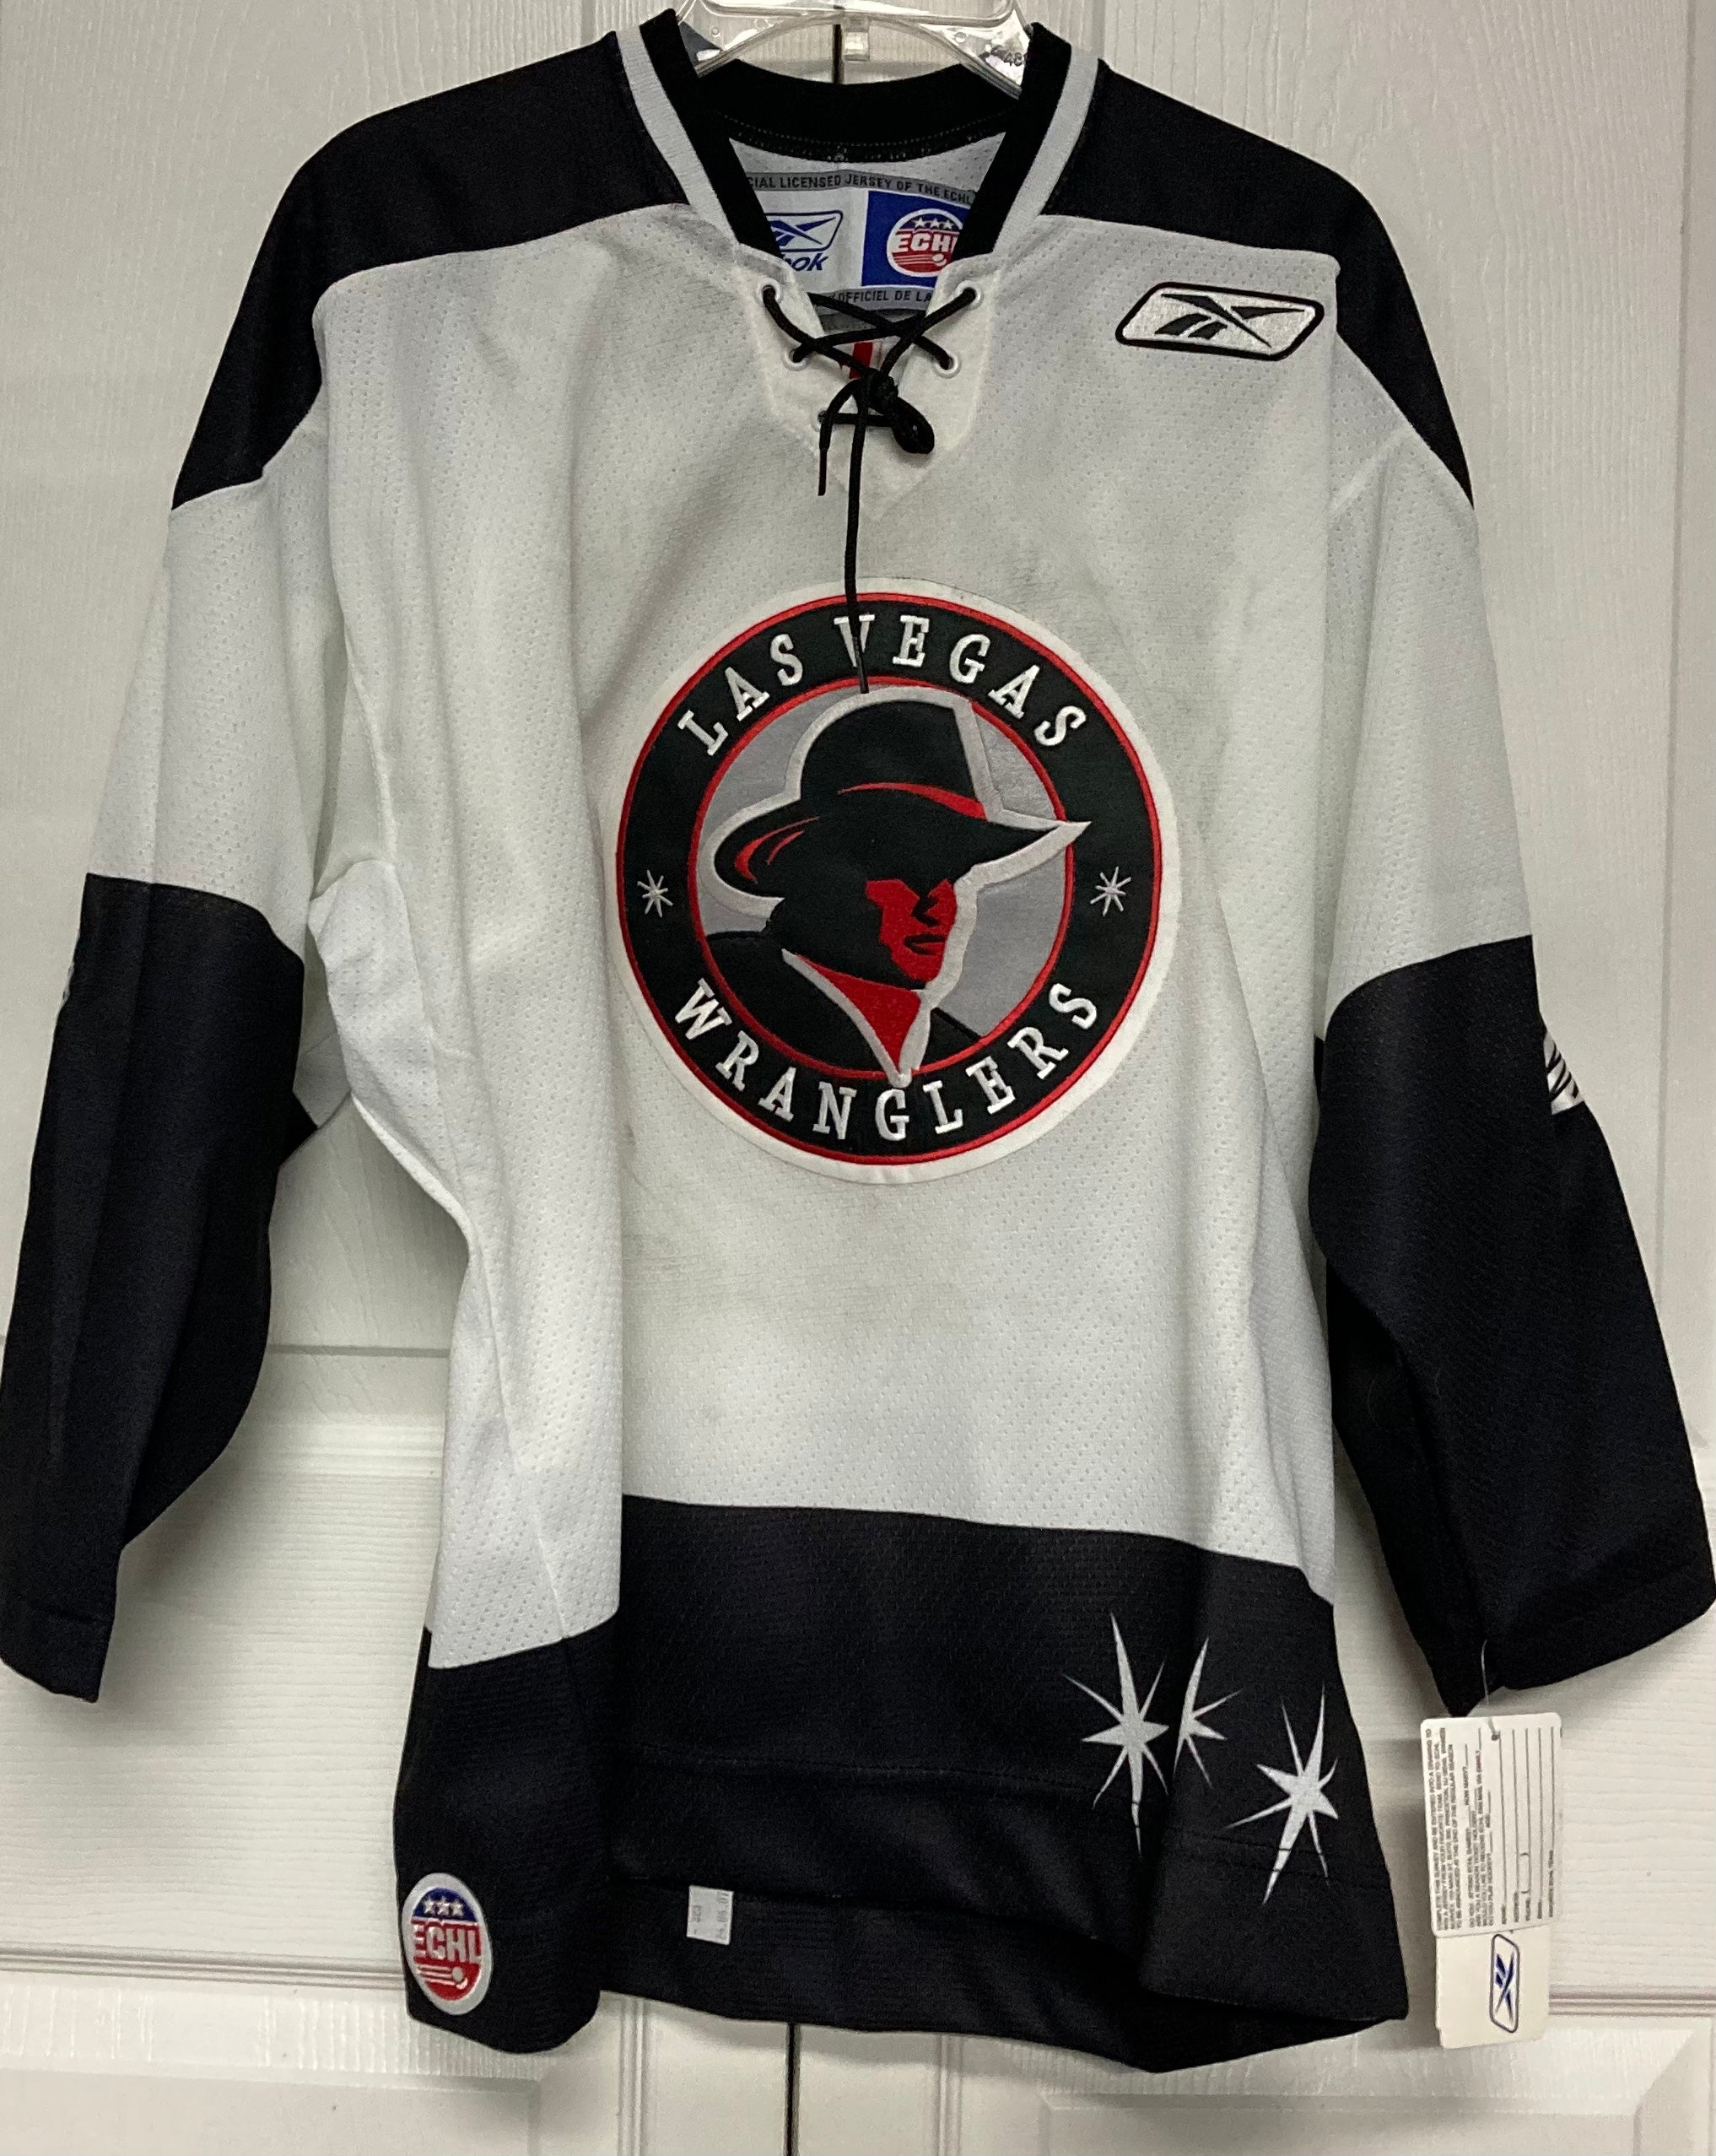 Jersey Ninja - Las Vegas Raiders White Hockey Jersey